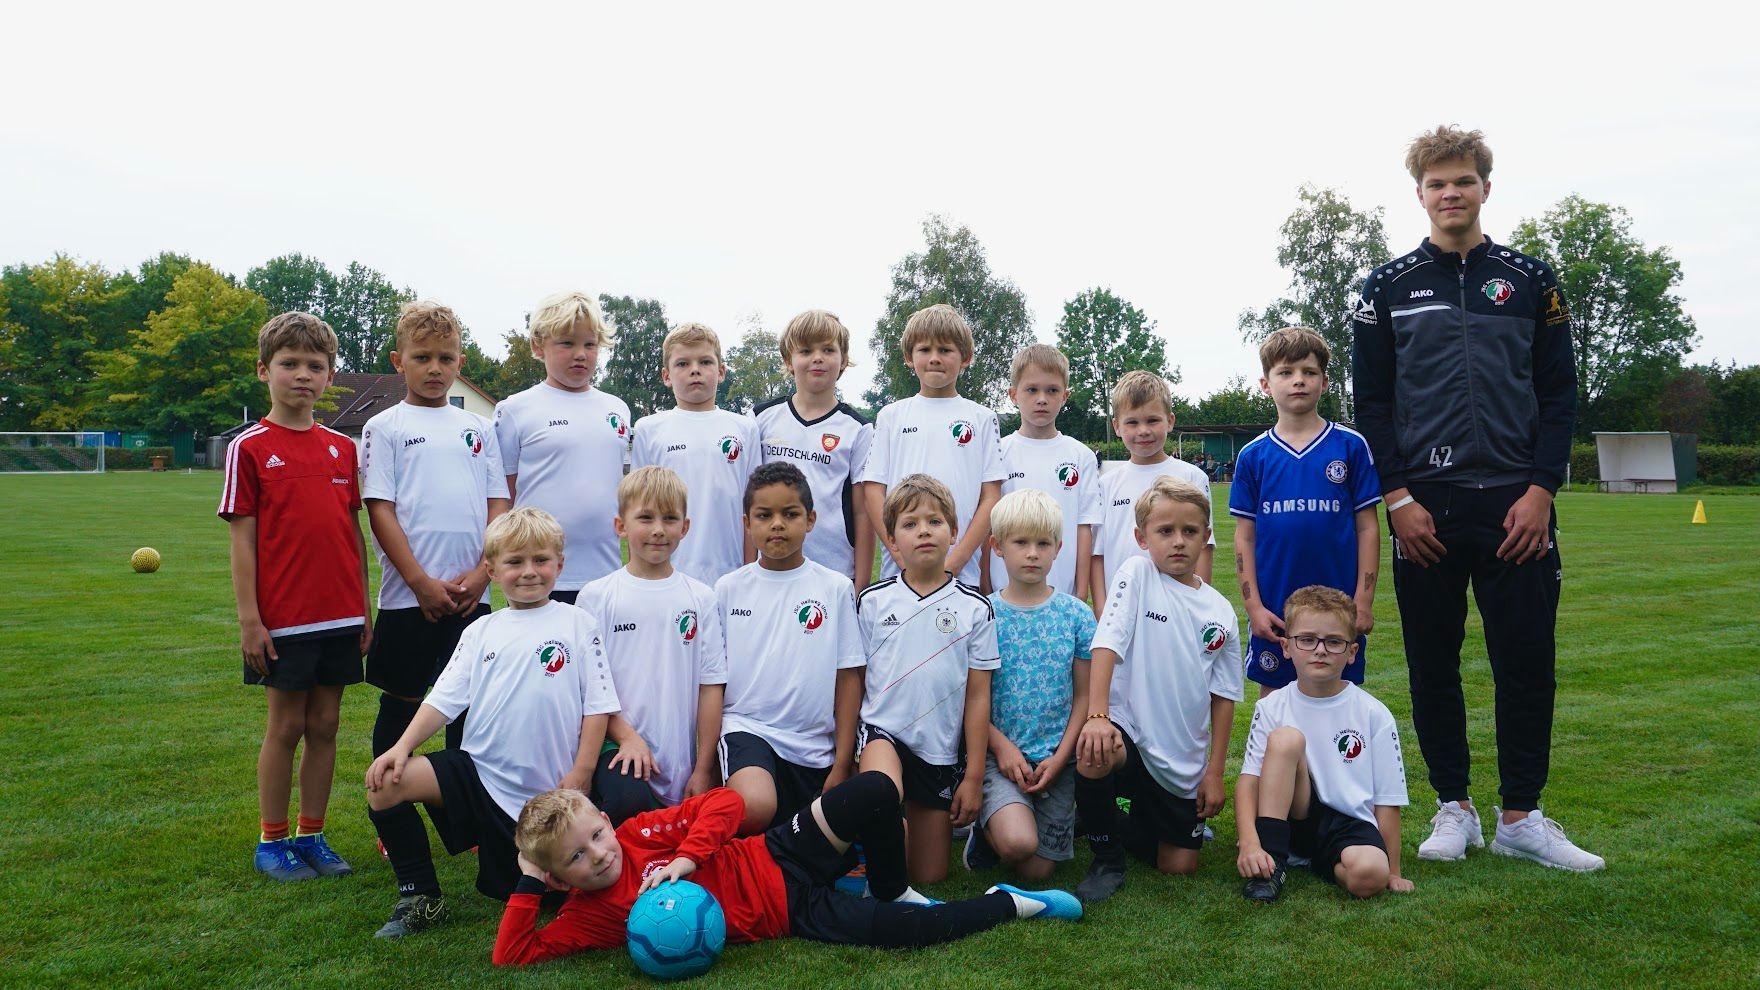 F2-Jugend (Jahrgang 2014) | JSG Hellweg Unna 2017